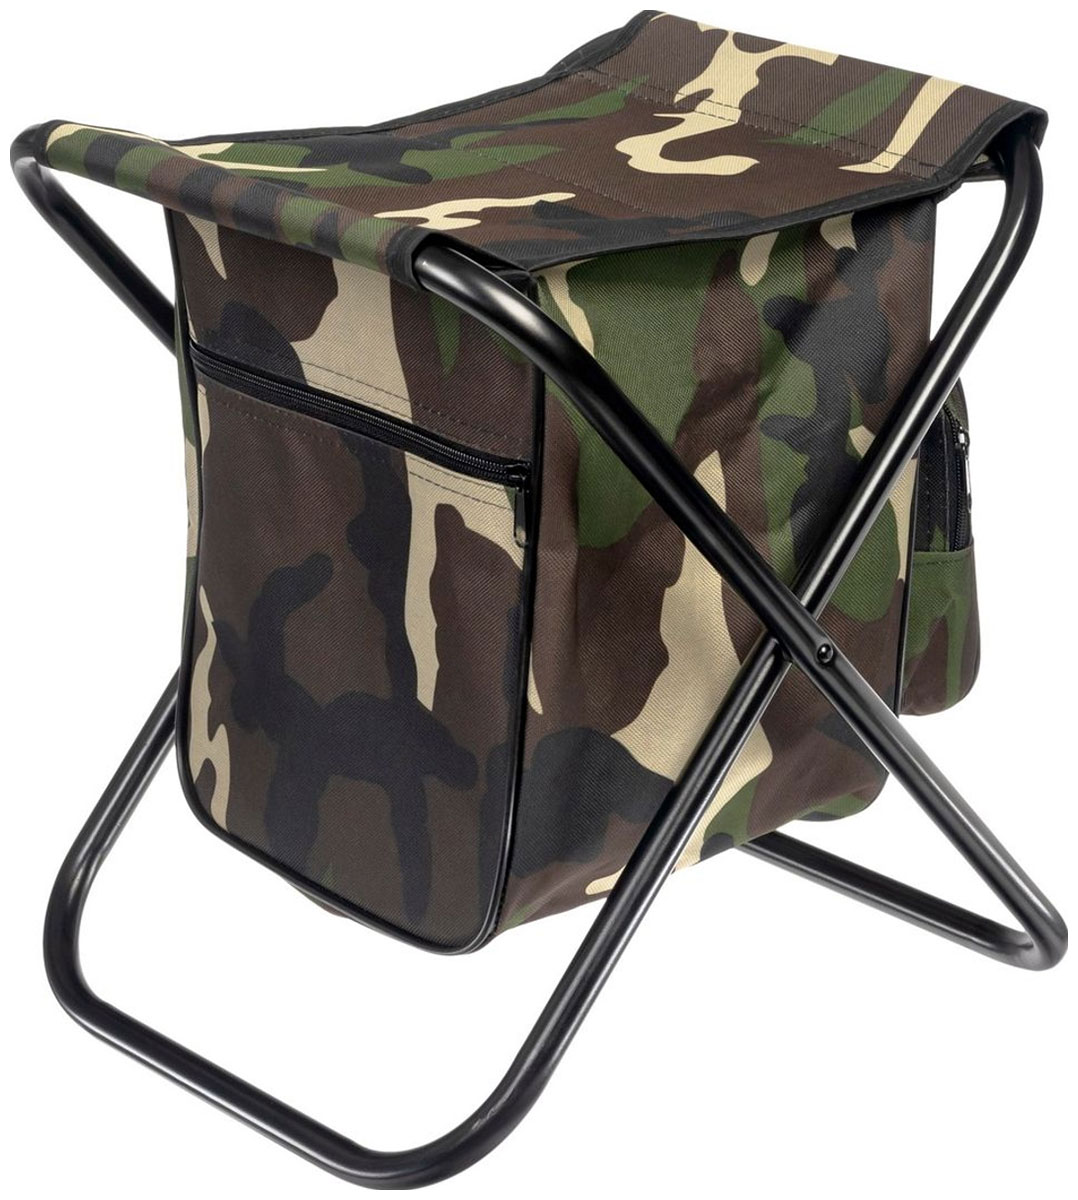 Табурет складной Bradex туристический для рыбалки, с сумкой SF 0887 уличное складное сиденье для кемпинга портативный стул в форме луны для пикника стул для кемпинга и рыбалки стул для отдыха на природе